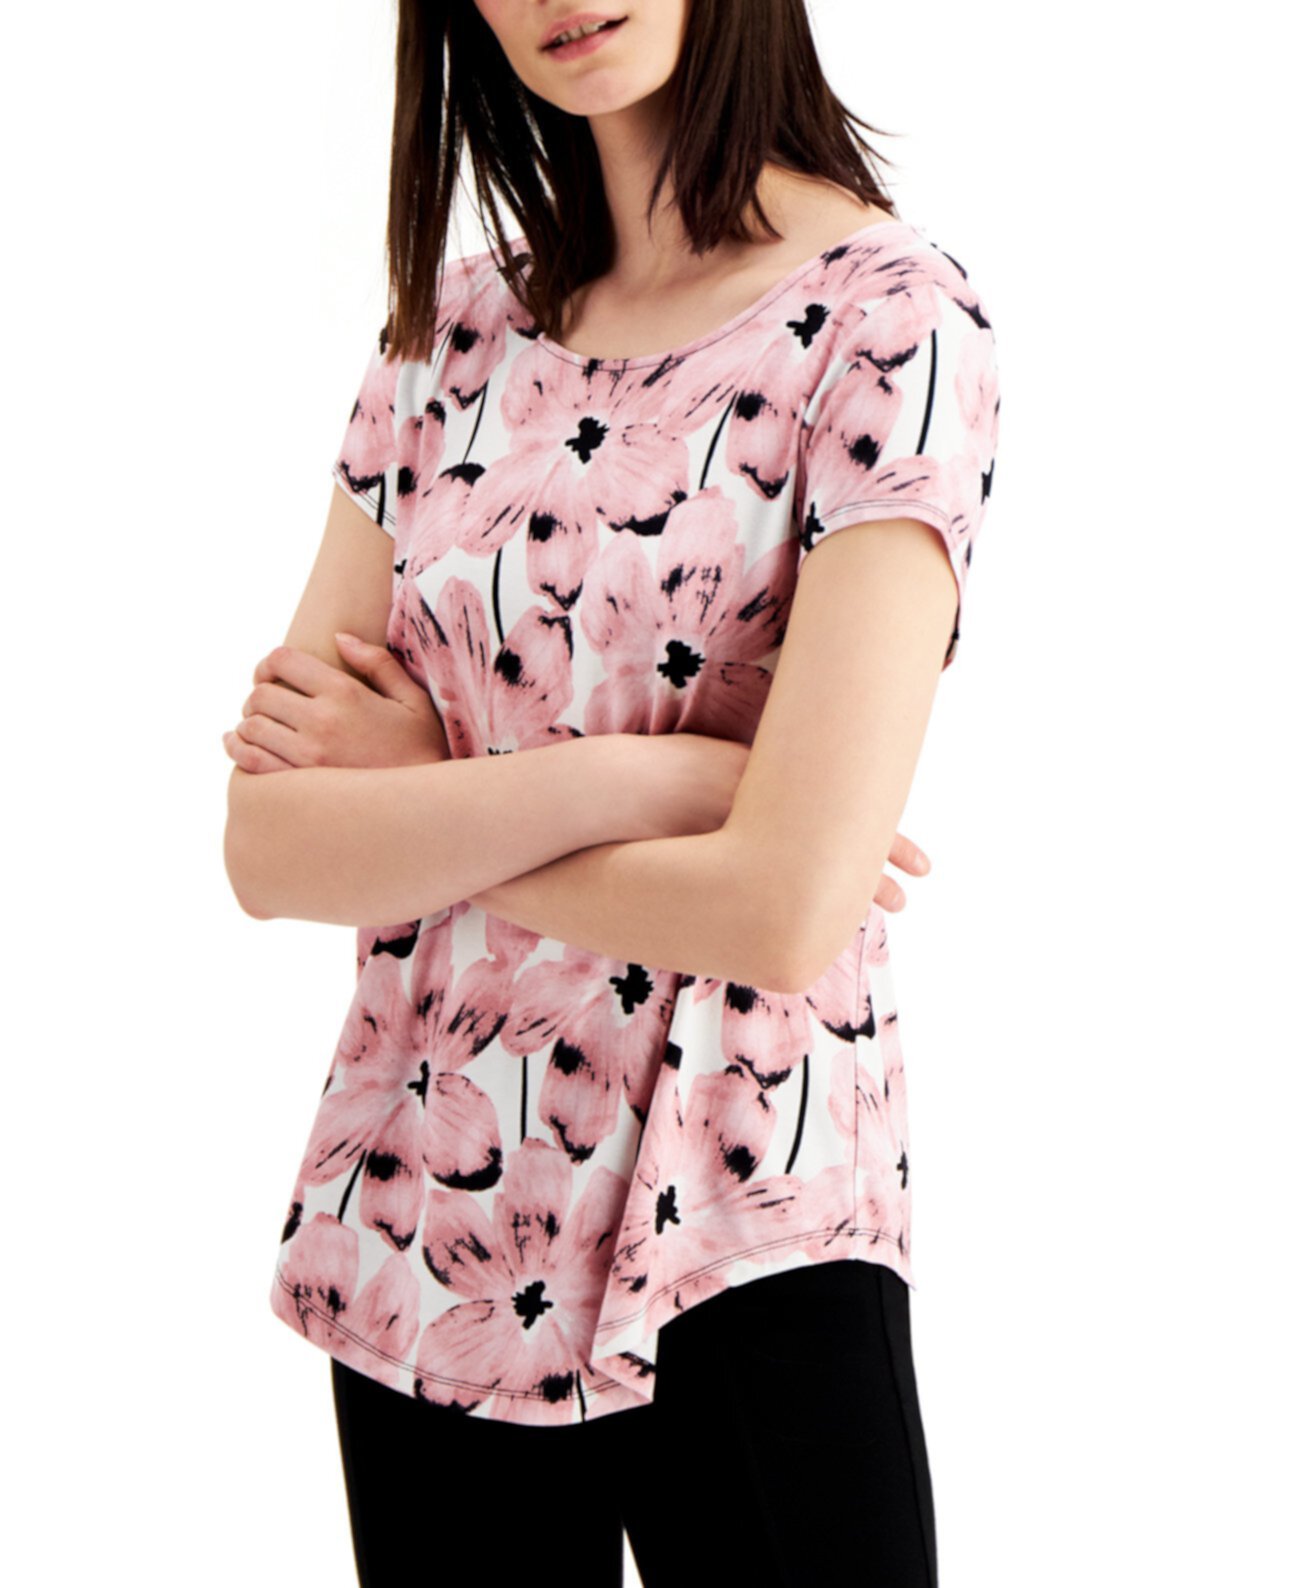 Миниатюрная футболка с цветочным принтом, созданная для Macy's Alfani